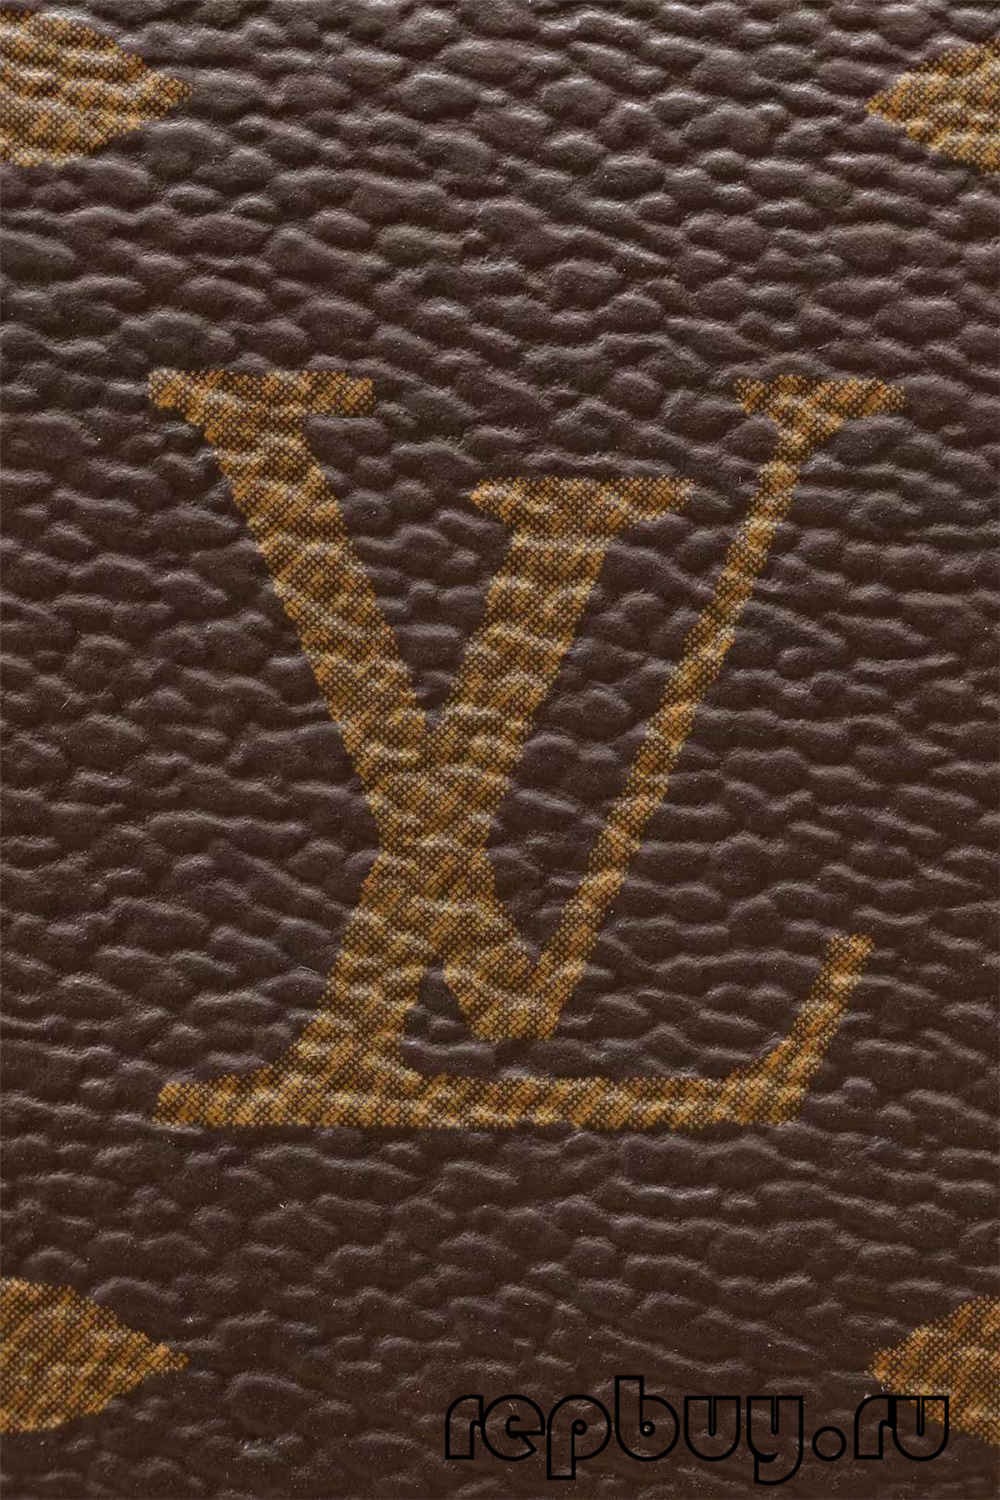 အရည်အသွေးအကောင်းဆုံး Louis Vuitton Speedy 25 အိတ်ပုံစံတူ အွန်လိုင်းစျေးဝယ် (2022 အပ်ဒိတ်လုပ်ထားသည်)-အရည်အသွေးအကောင်းဆုံးအတု Louis Vuitton Bag အွန်လိုင်းစတိုး၊ ပုံစံတူဒီဇိုင်နာအိတ် ru